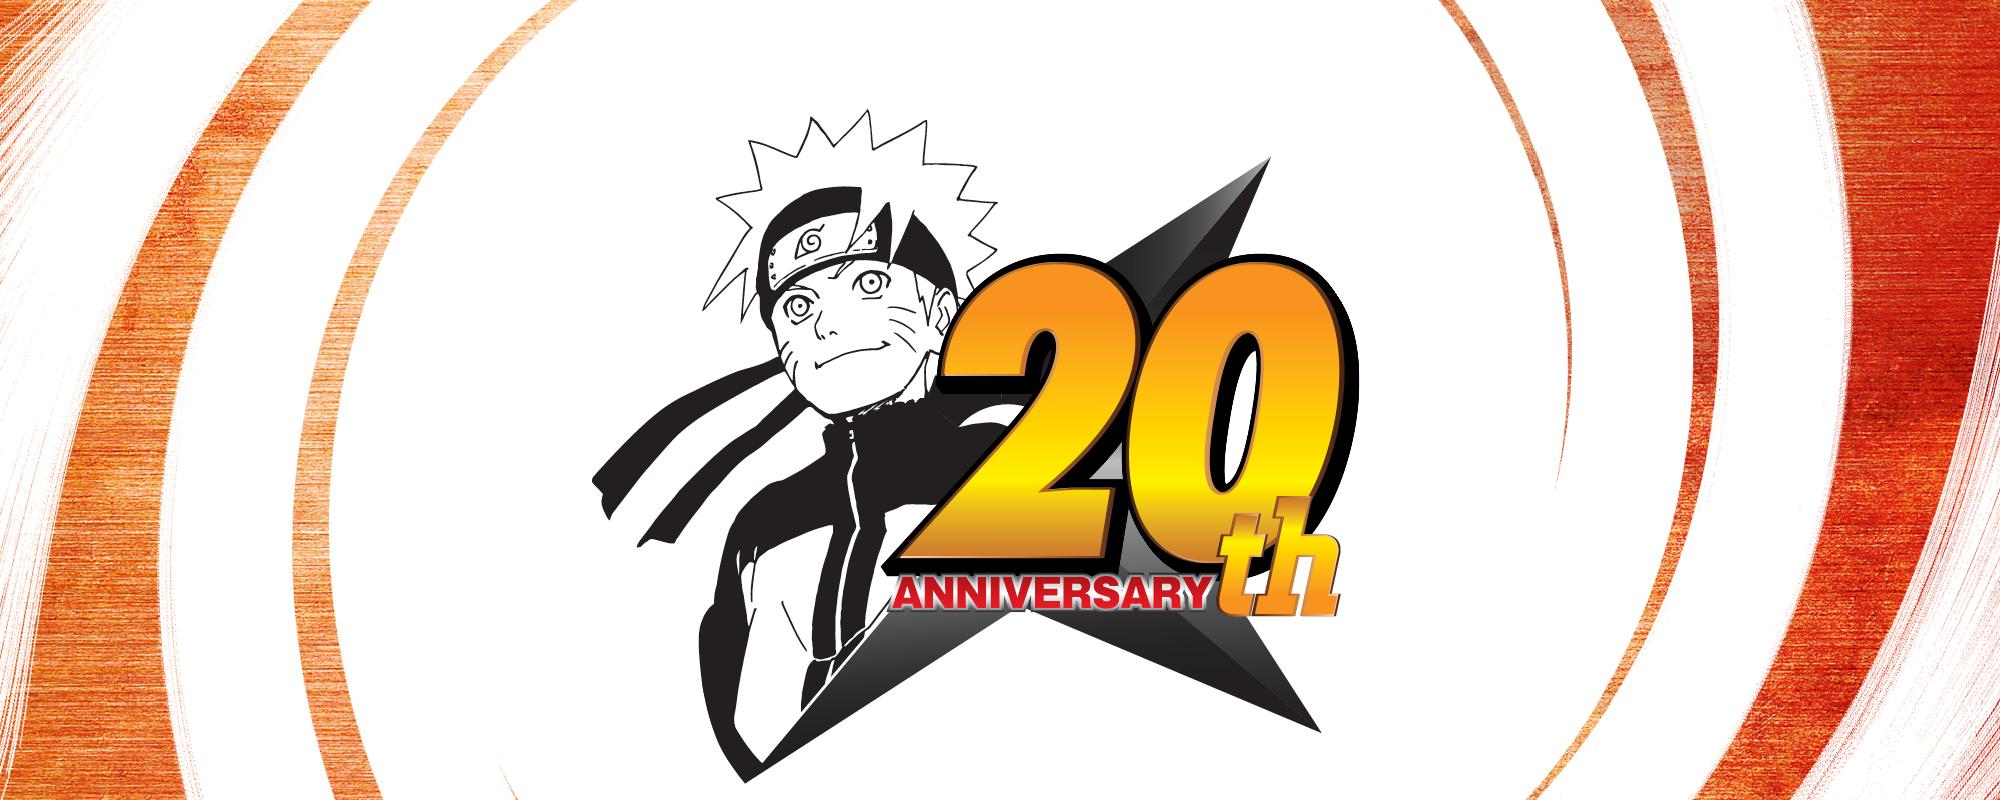 VIZ. The Official Website for Naruto Shippuden